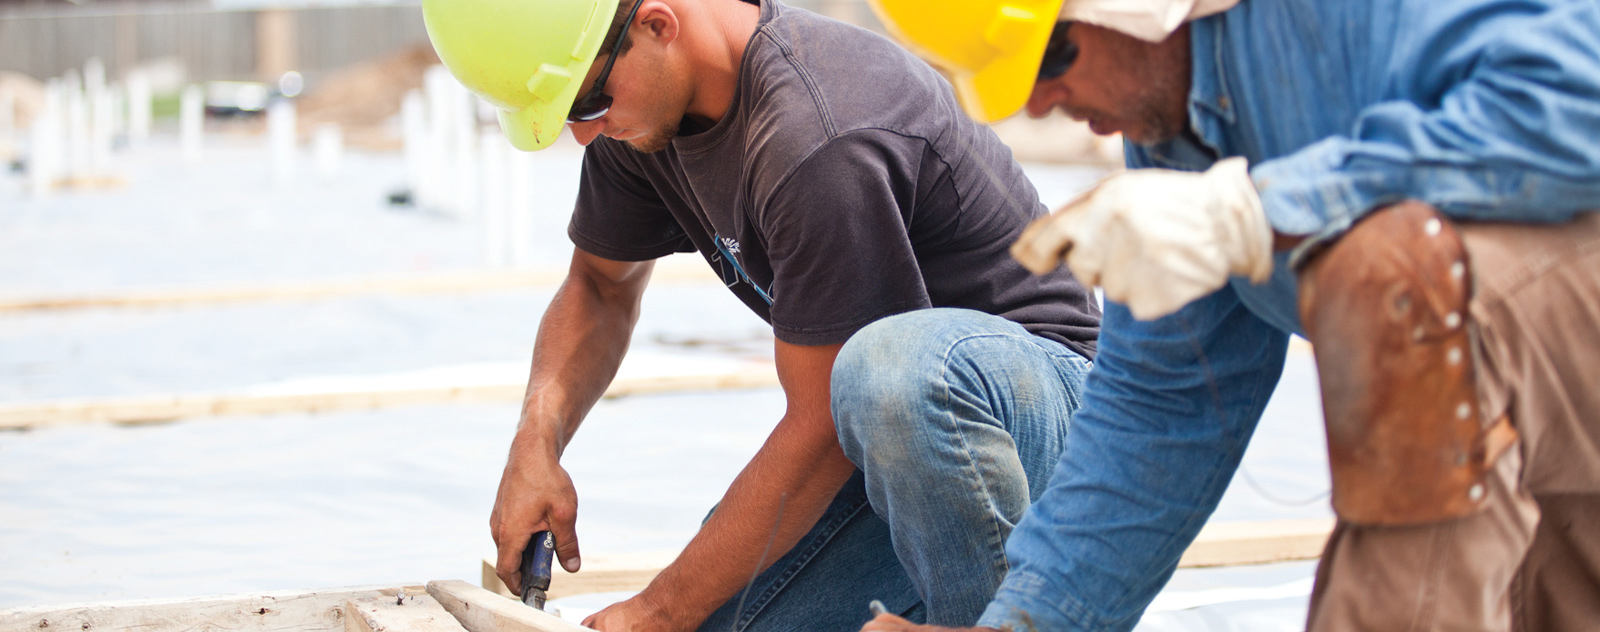 Build Up Kansas - Construction Careers